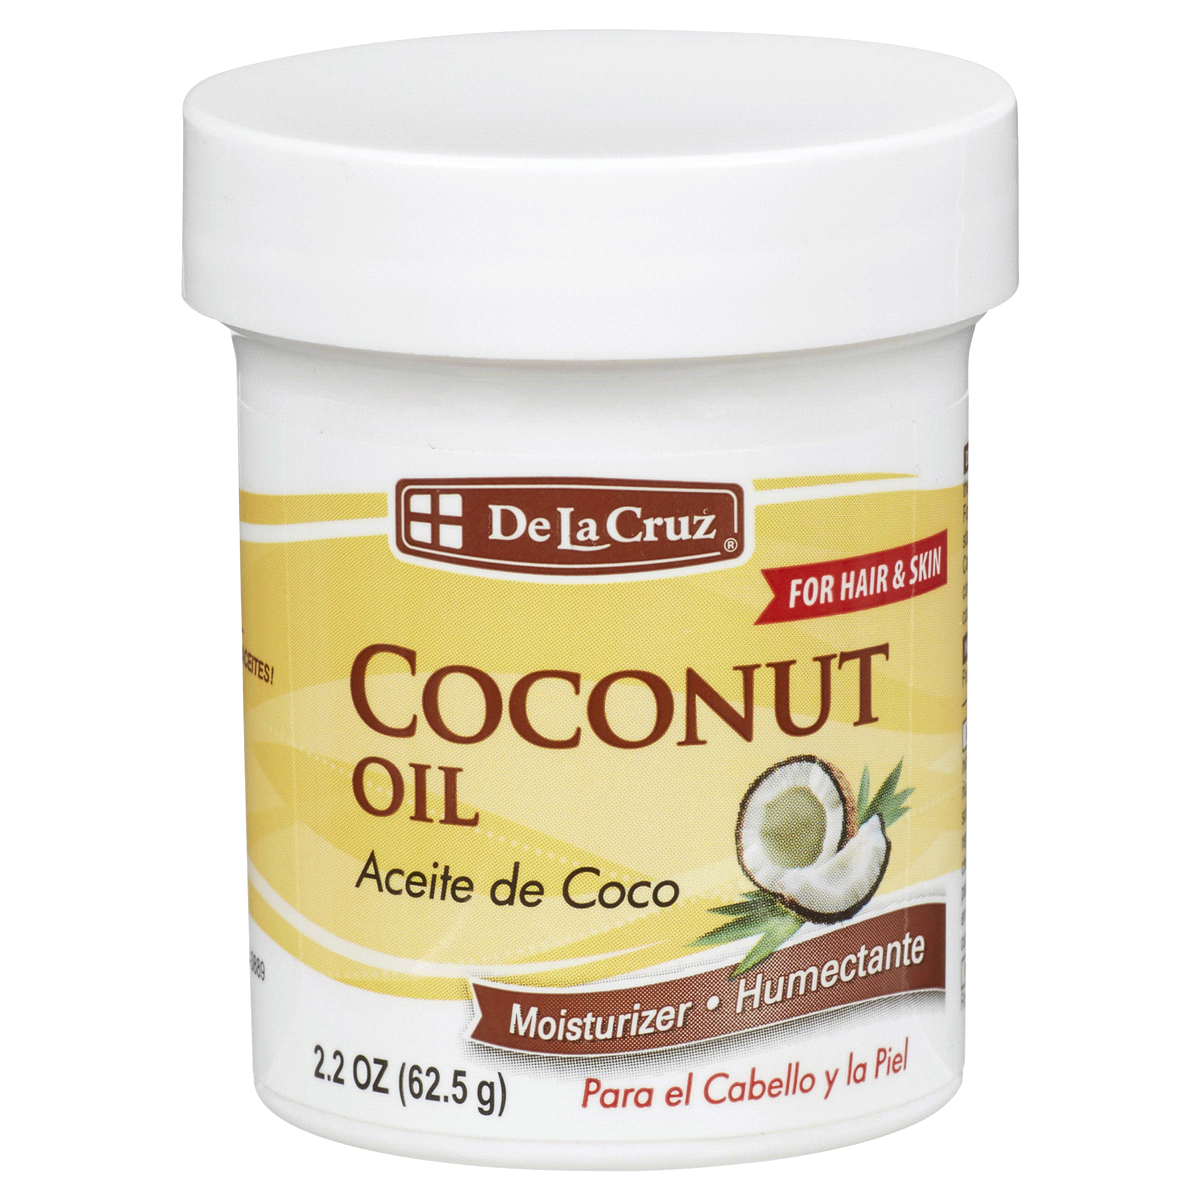 slide 1 of 1, De la Cruz Aceite De Coco Coconut Oil, 2.2 oz